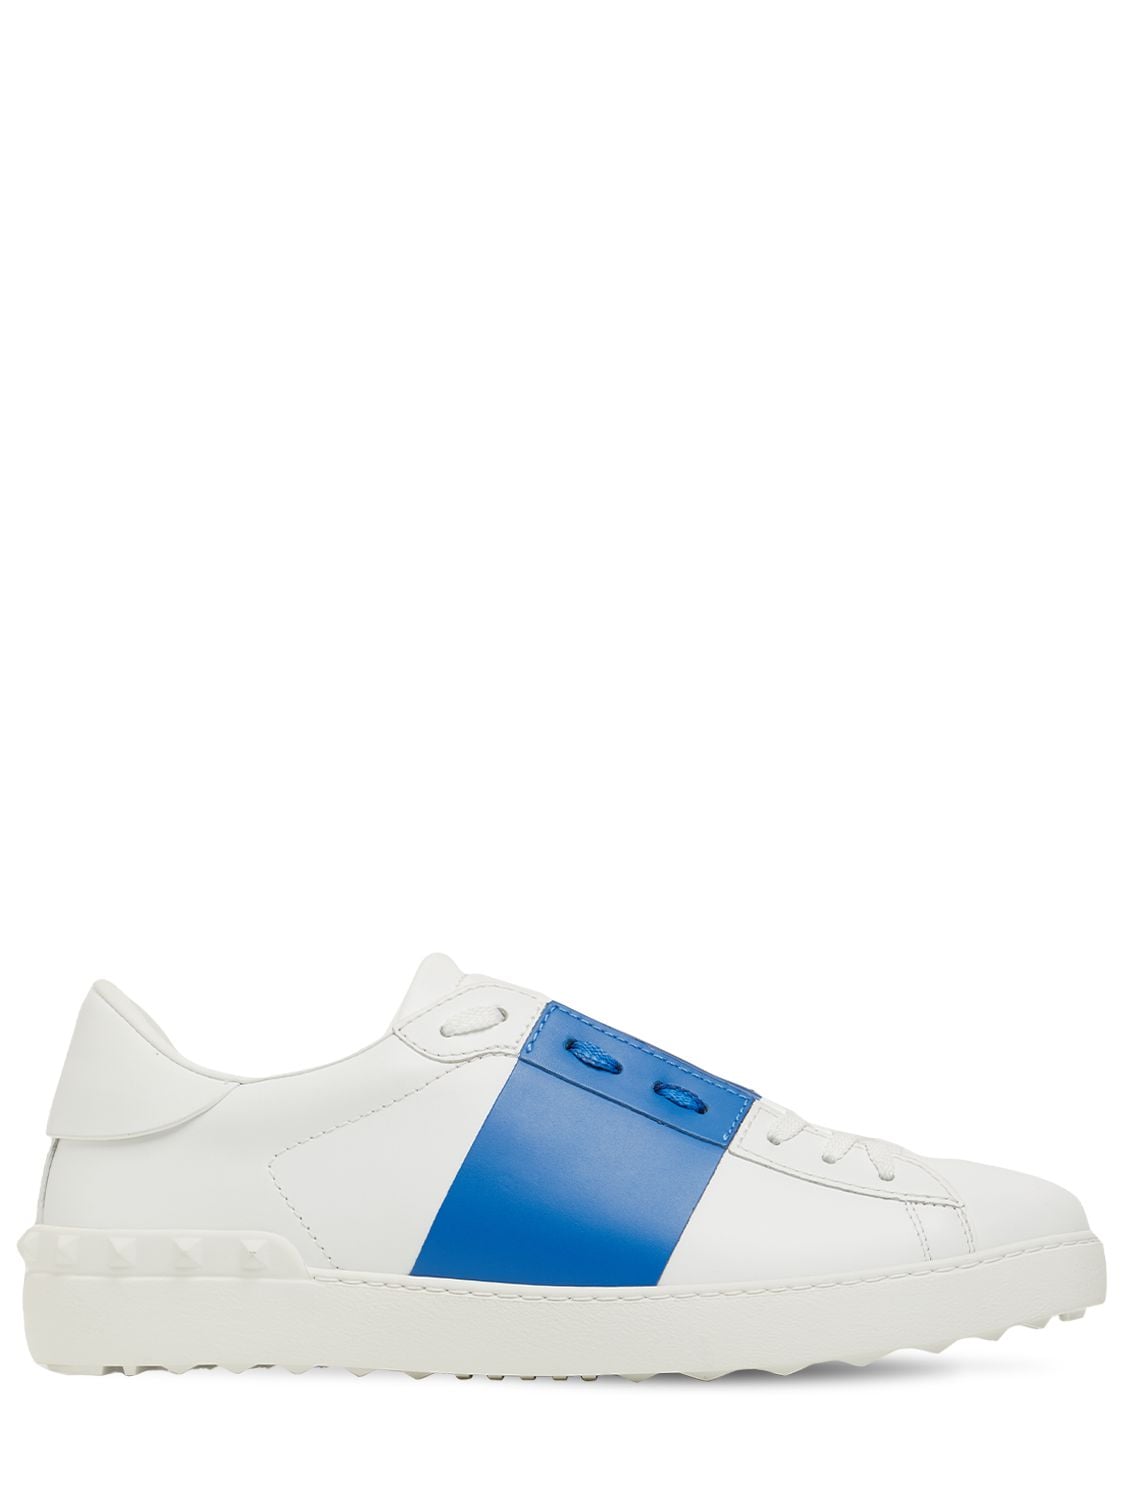 Valentino Garavani - Open color block leather sneakers - White/Blue ...